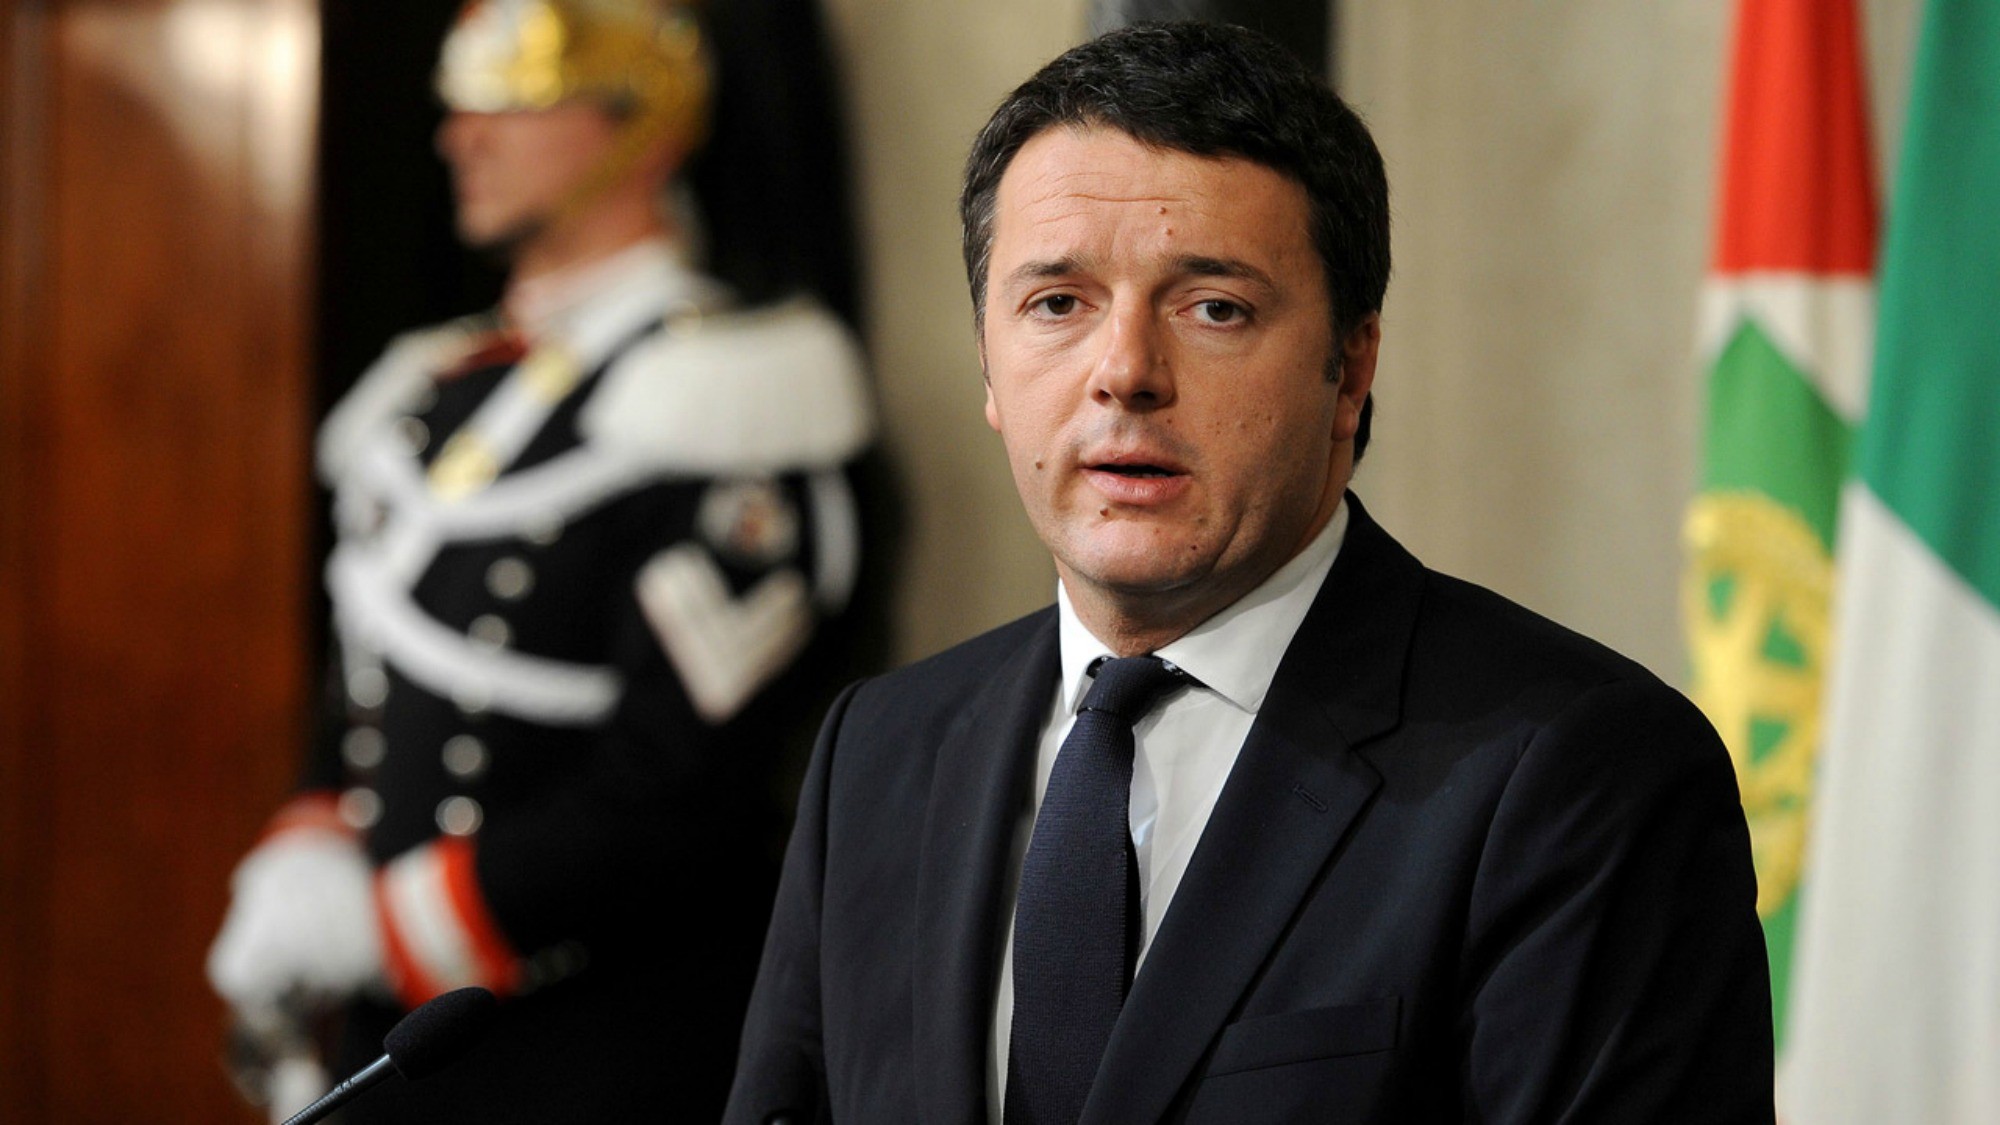 Italia: Accordo tra Renzi e Calenda per l’ingresso in comune alle elezioni (tweet) |  Notizie sull’economia